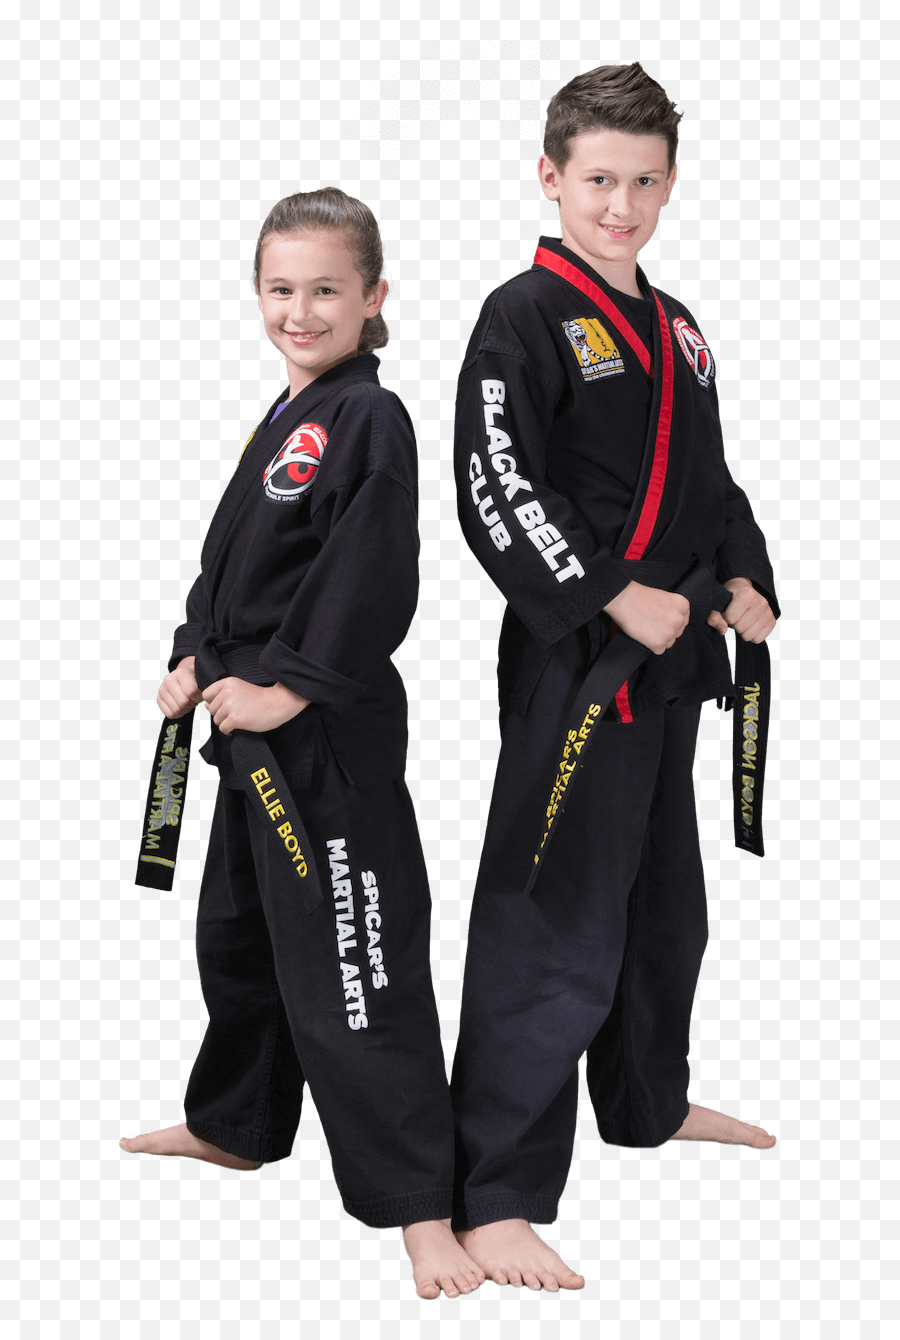 Karate Kids 6 - 11 U2014 Reveal Martial Arts Award Winning Emoji,Body Of Emotion Kids